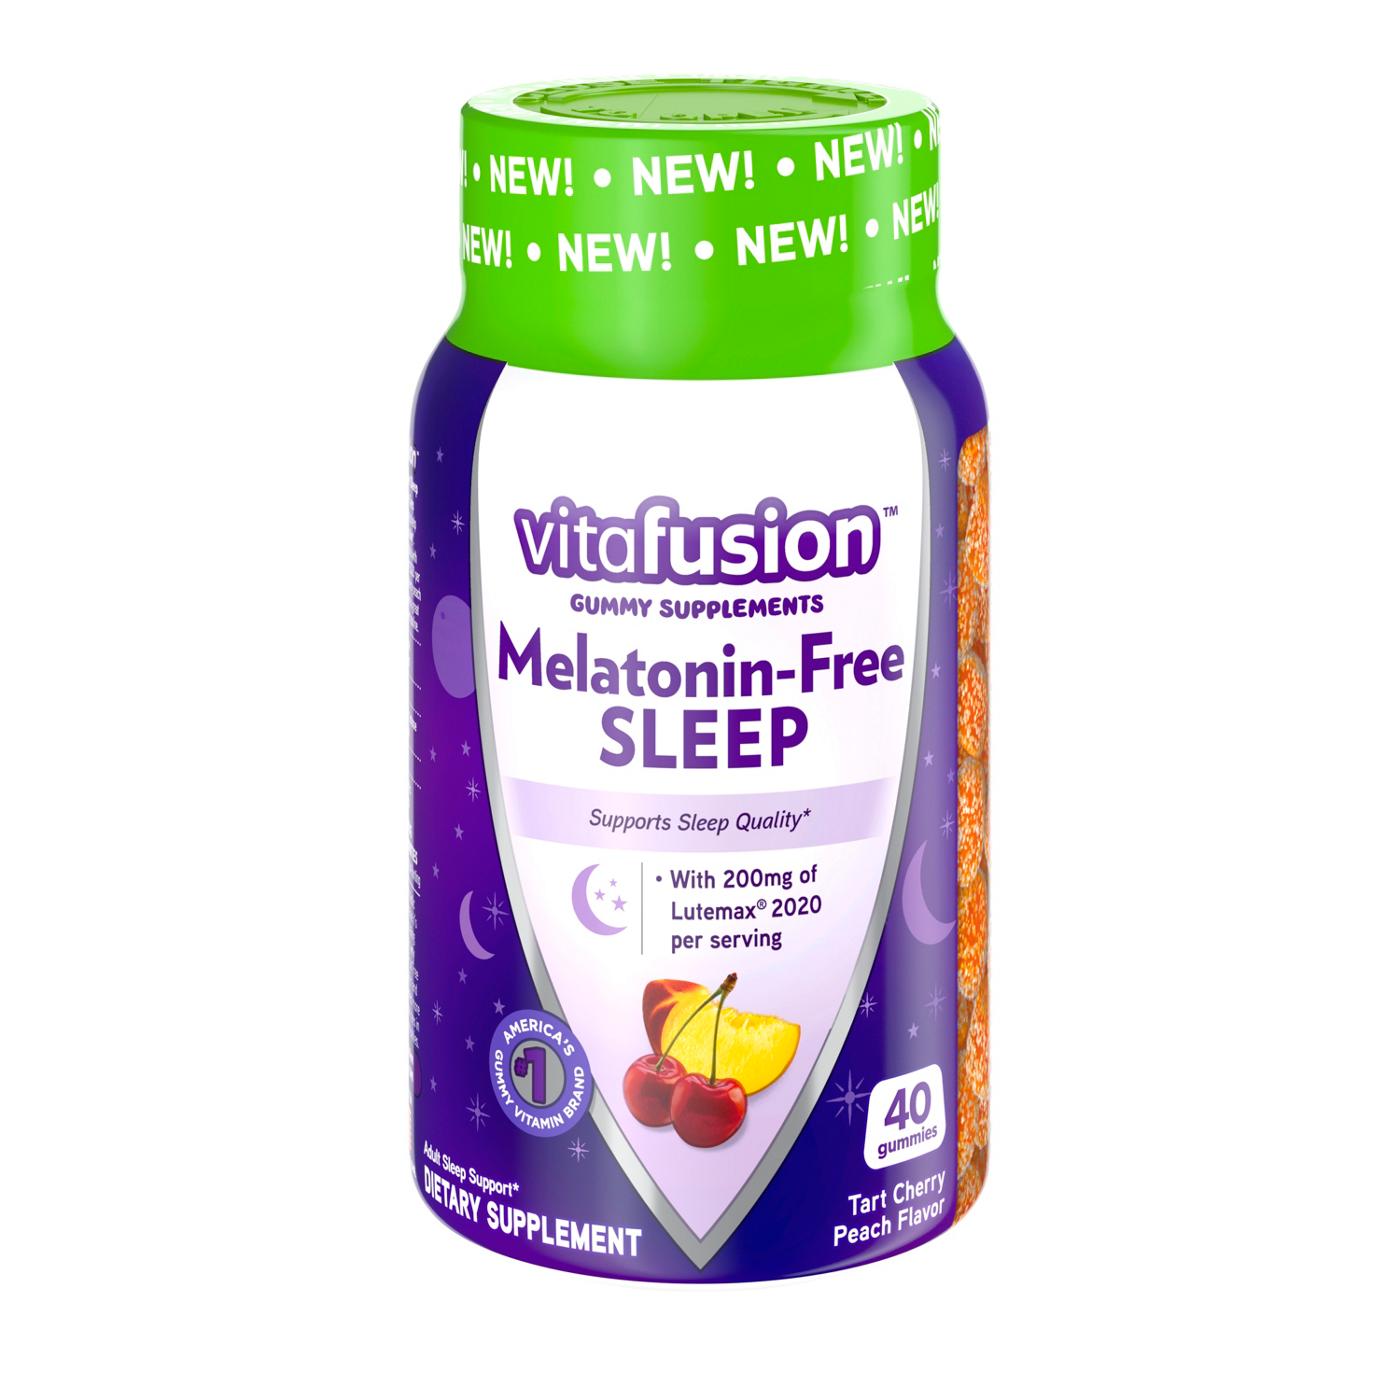 Vitafusion Melatonin-Free Sleep Gummies; image 1 of 2